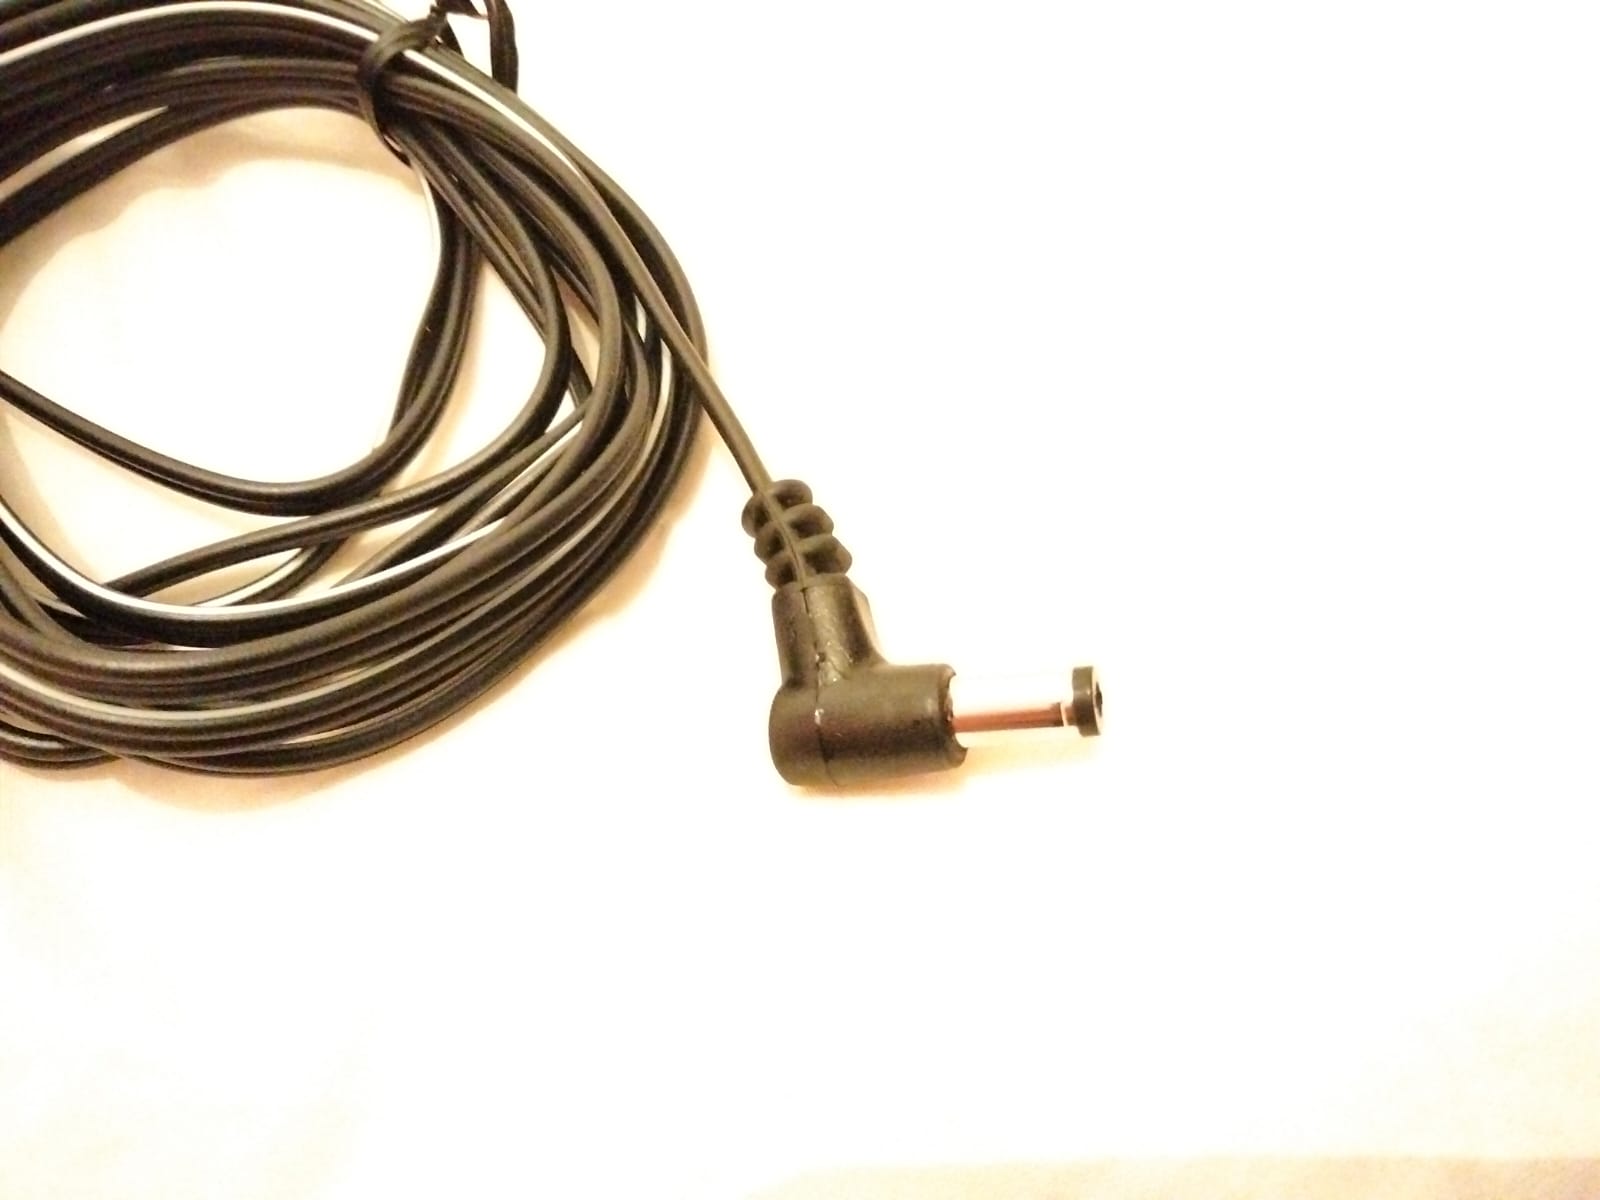 Cable d'alimentation piège photo 3m coudé - SeebySound